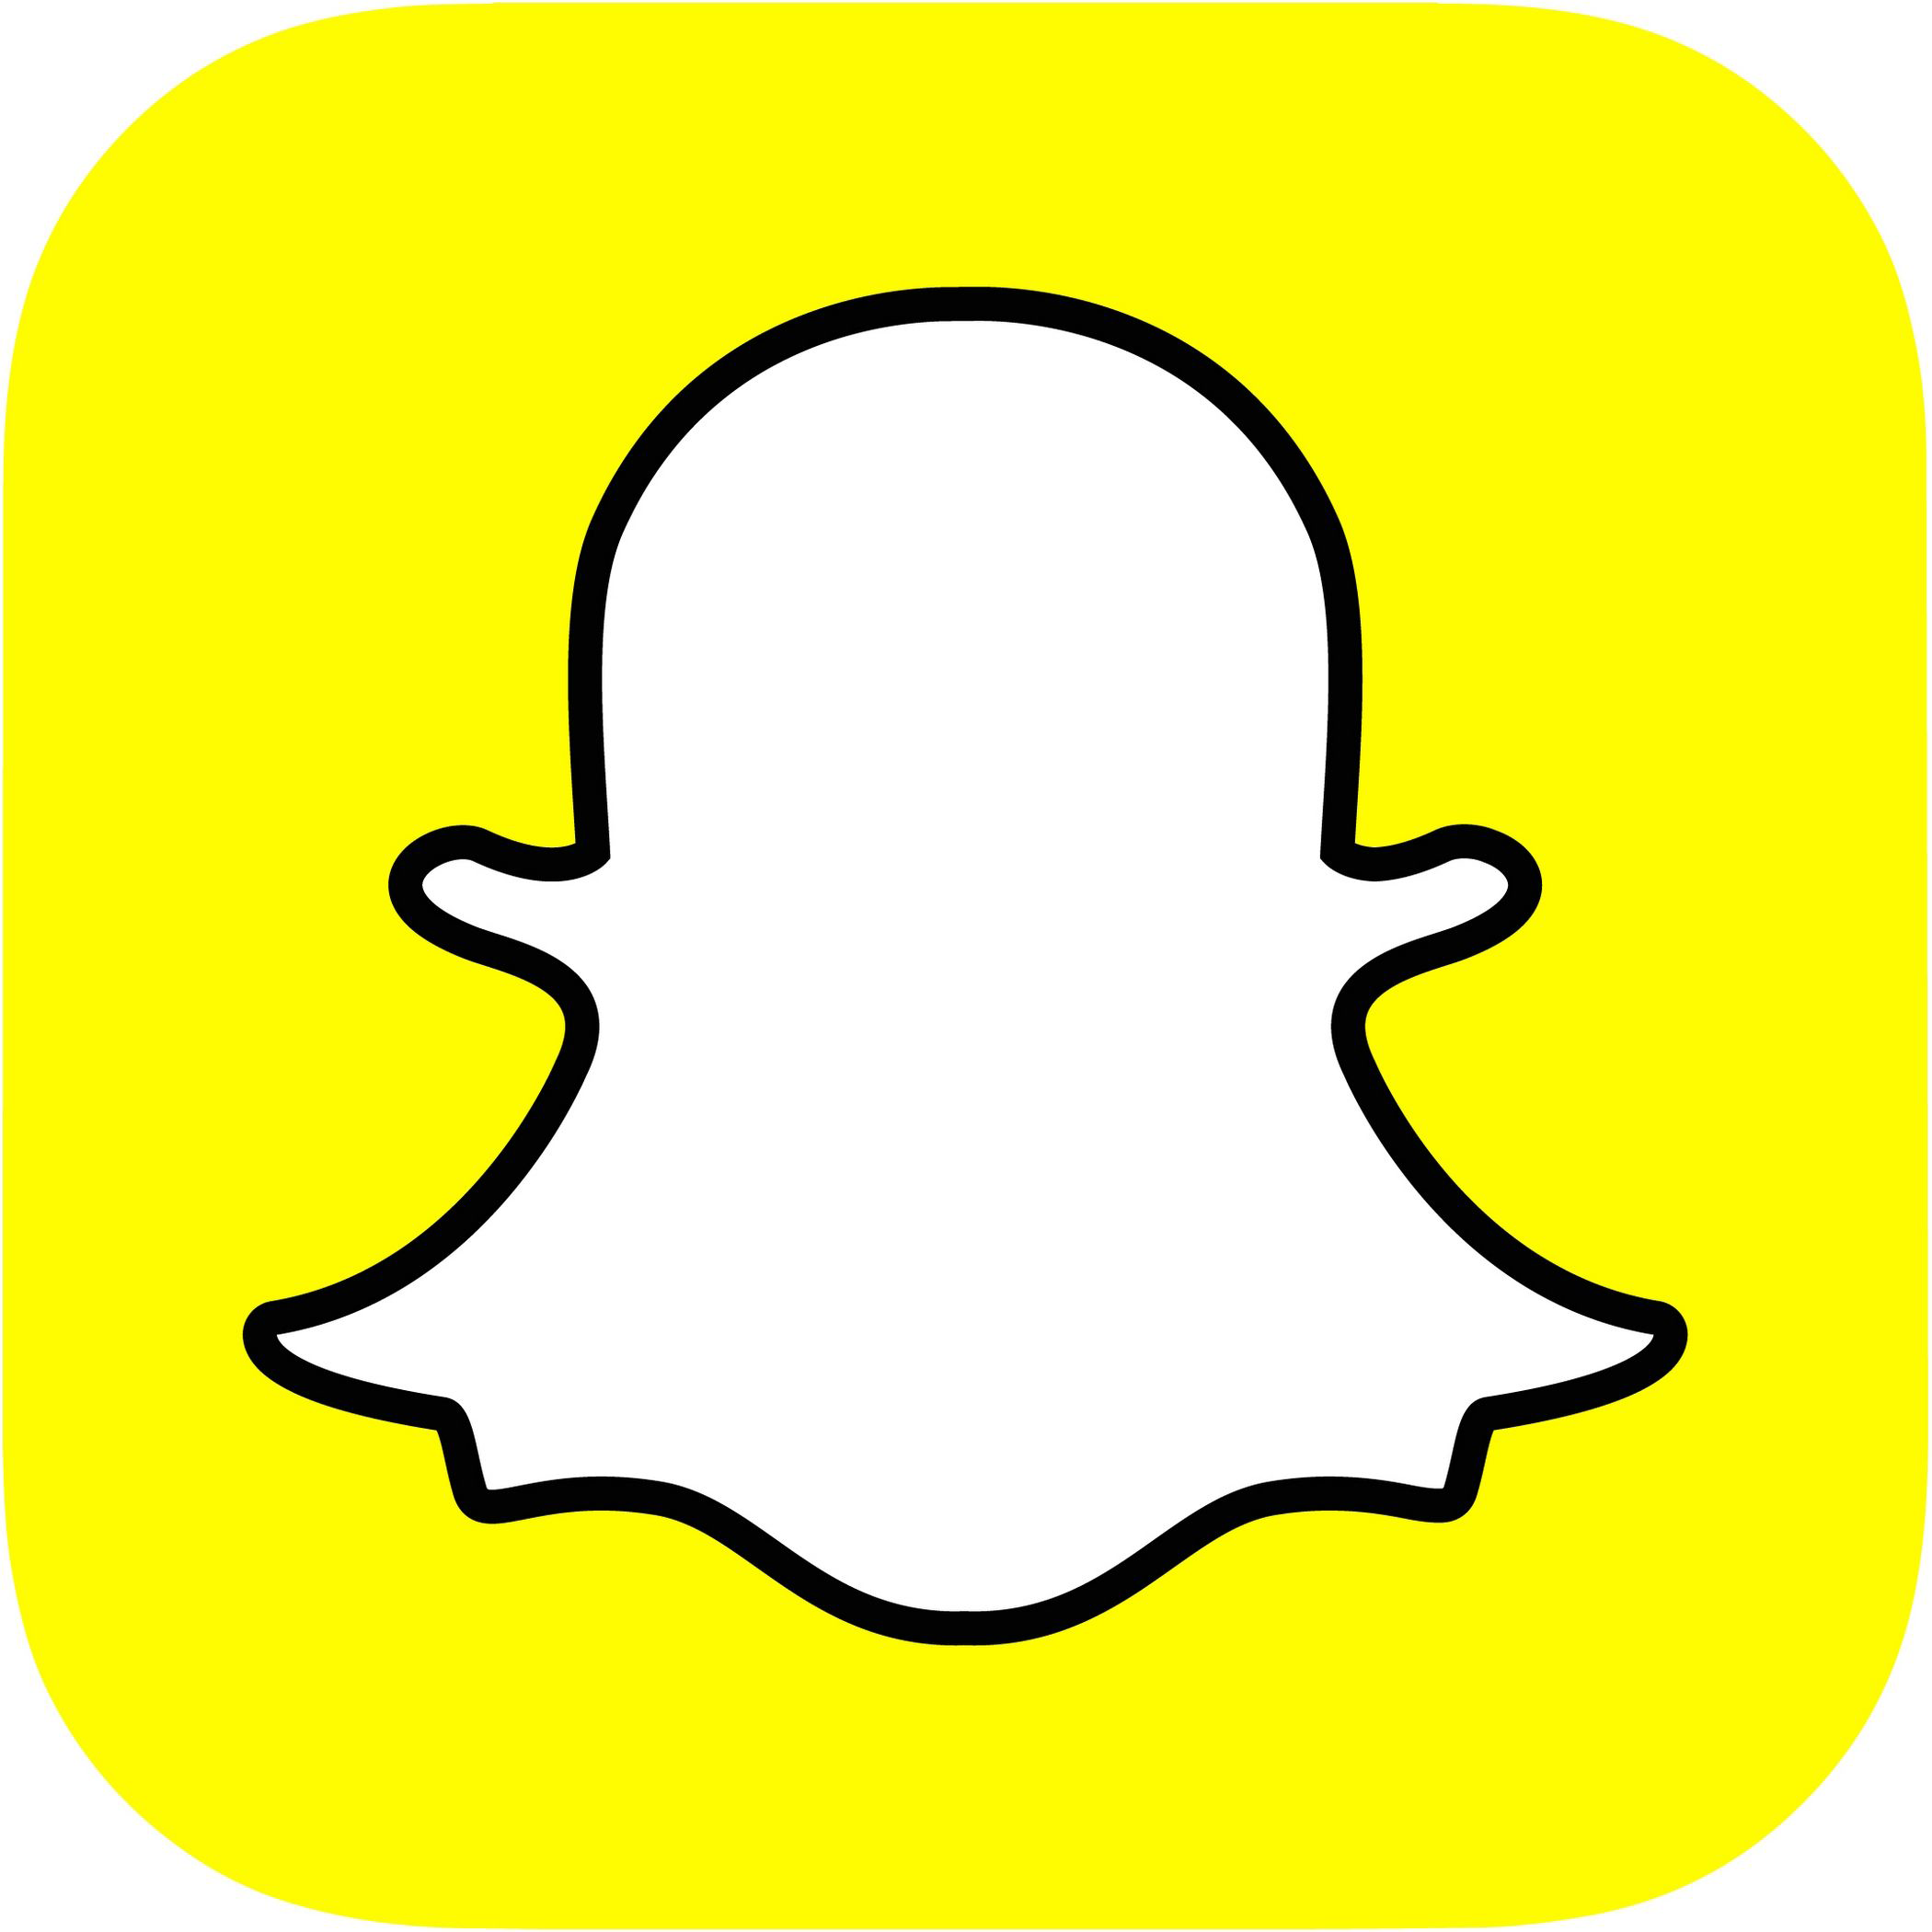 Sapchat-logo, keltainen tausta, valkoinen piirretty haamu keskellä.